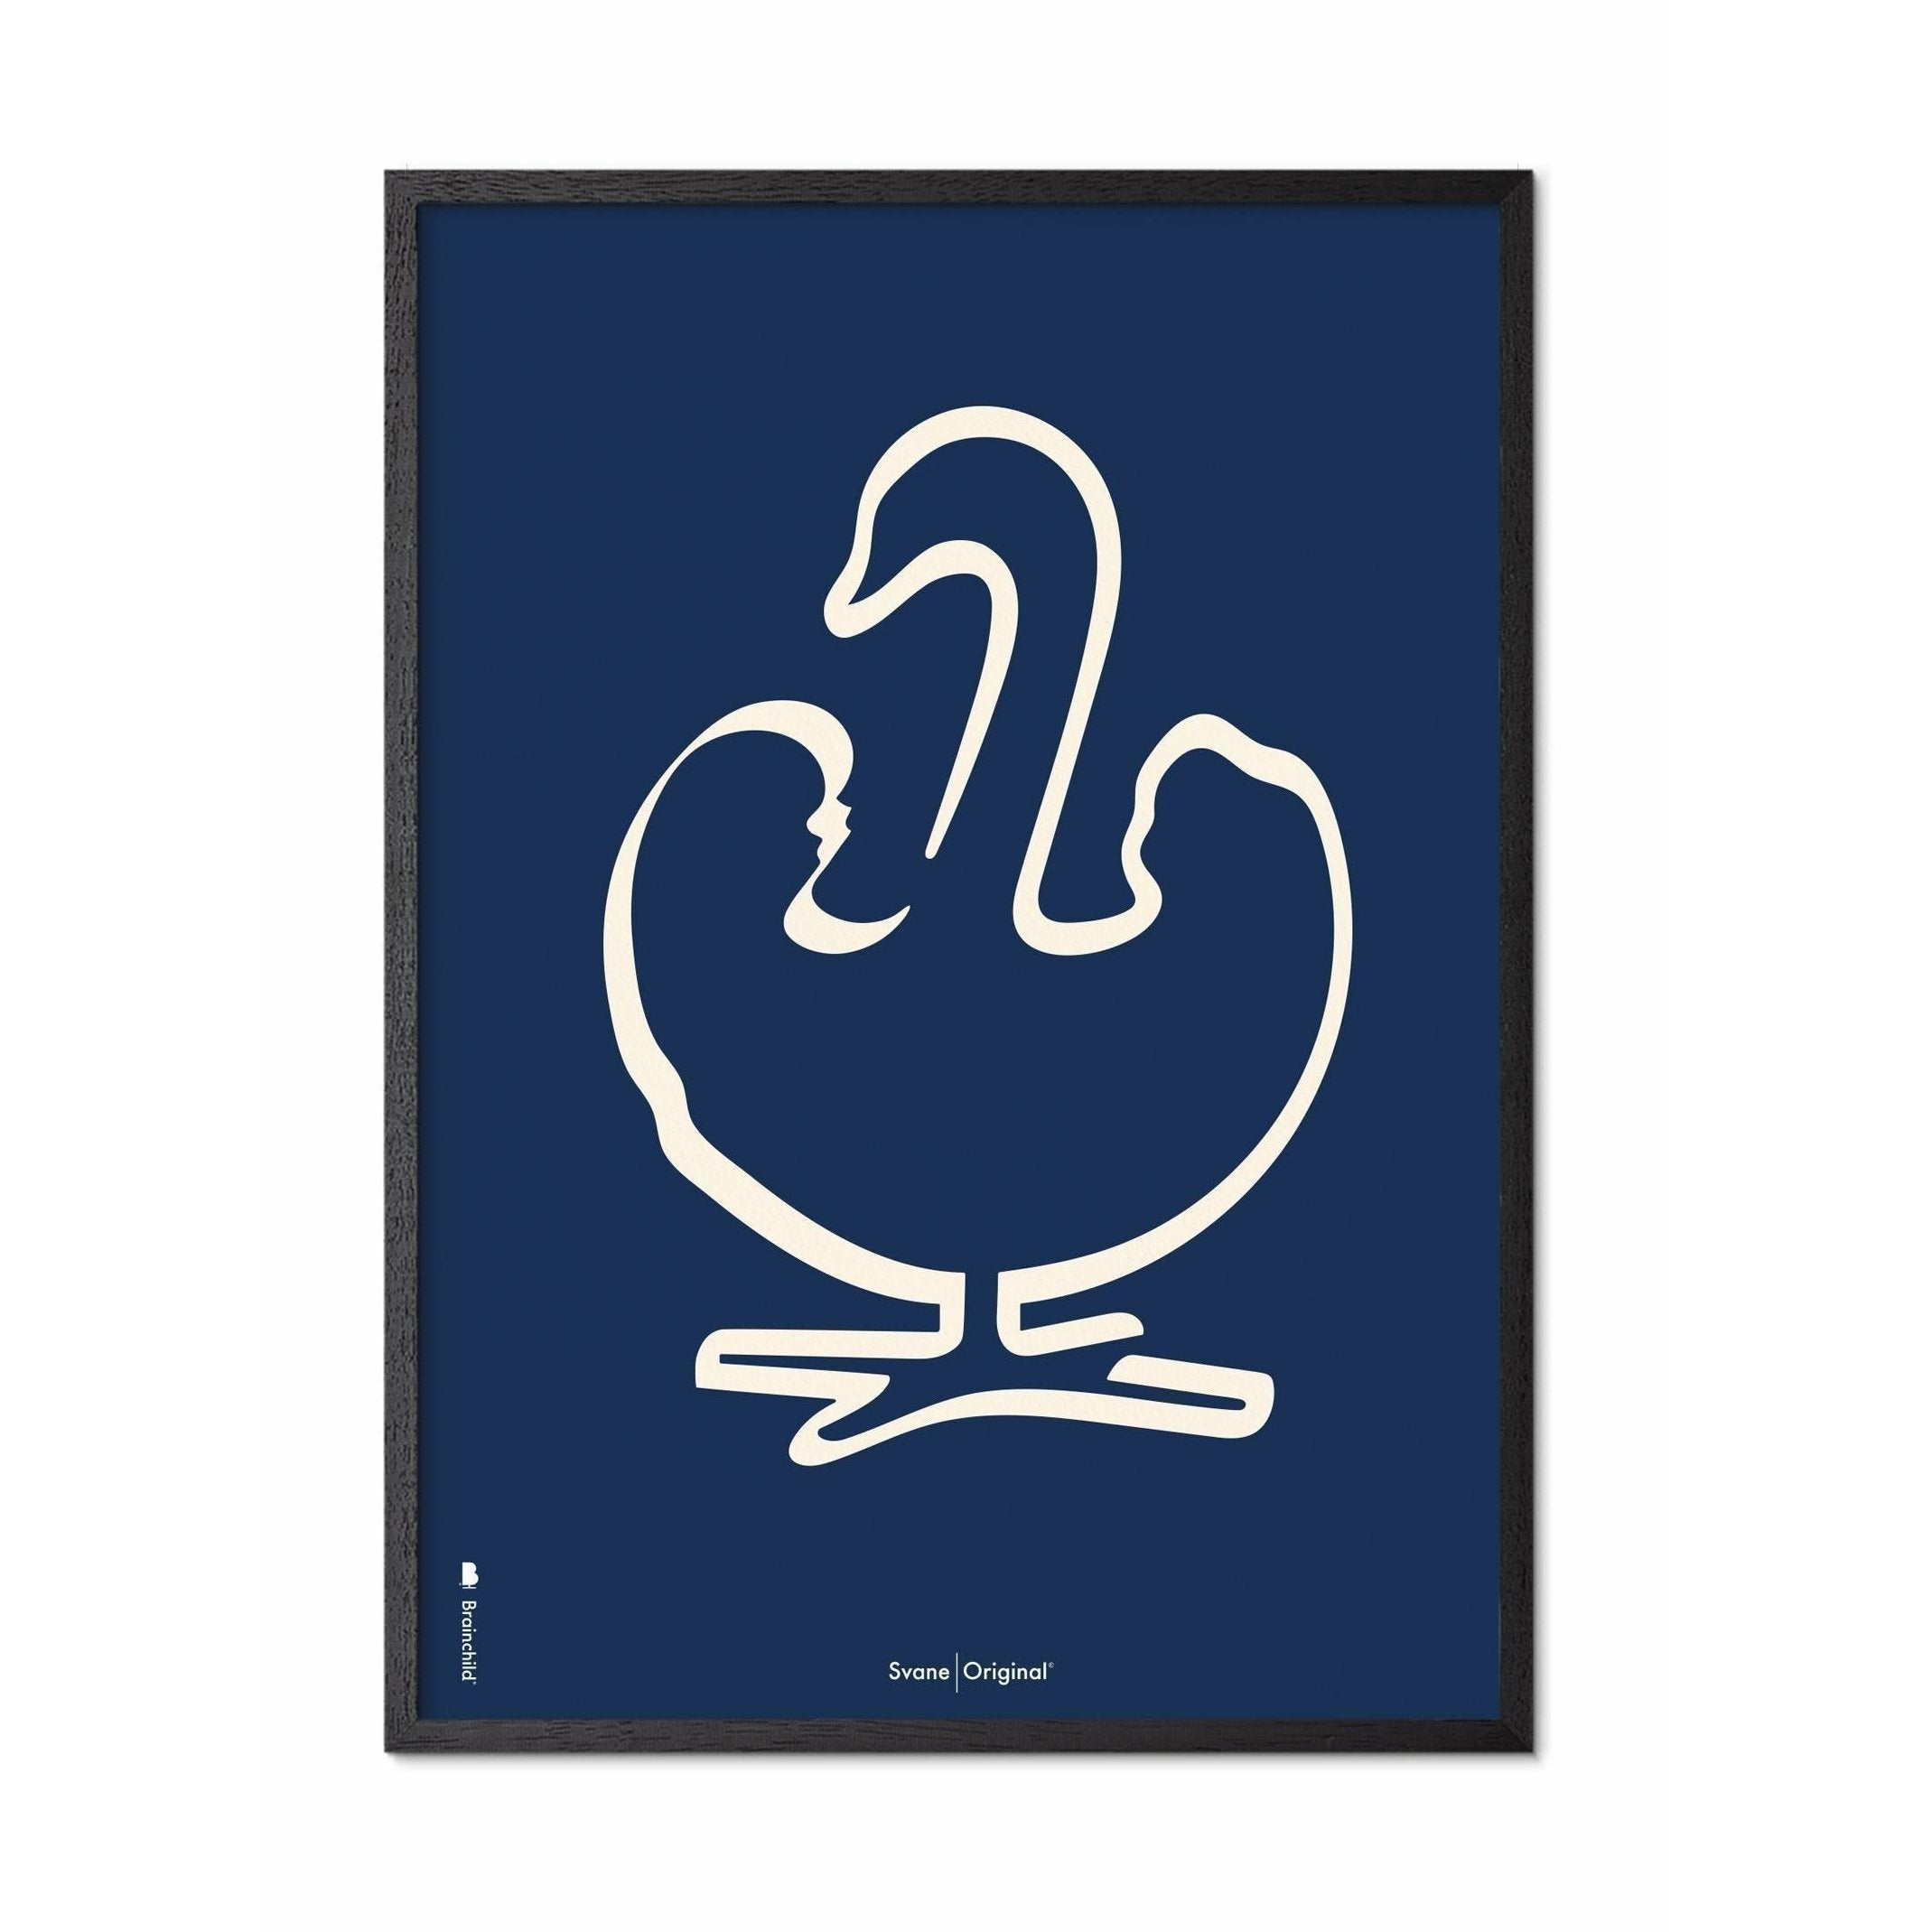 Plakát s labutí linií, rám vyrobený z černého lakovaného dřeva 30x40 cm, modré pozadí